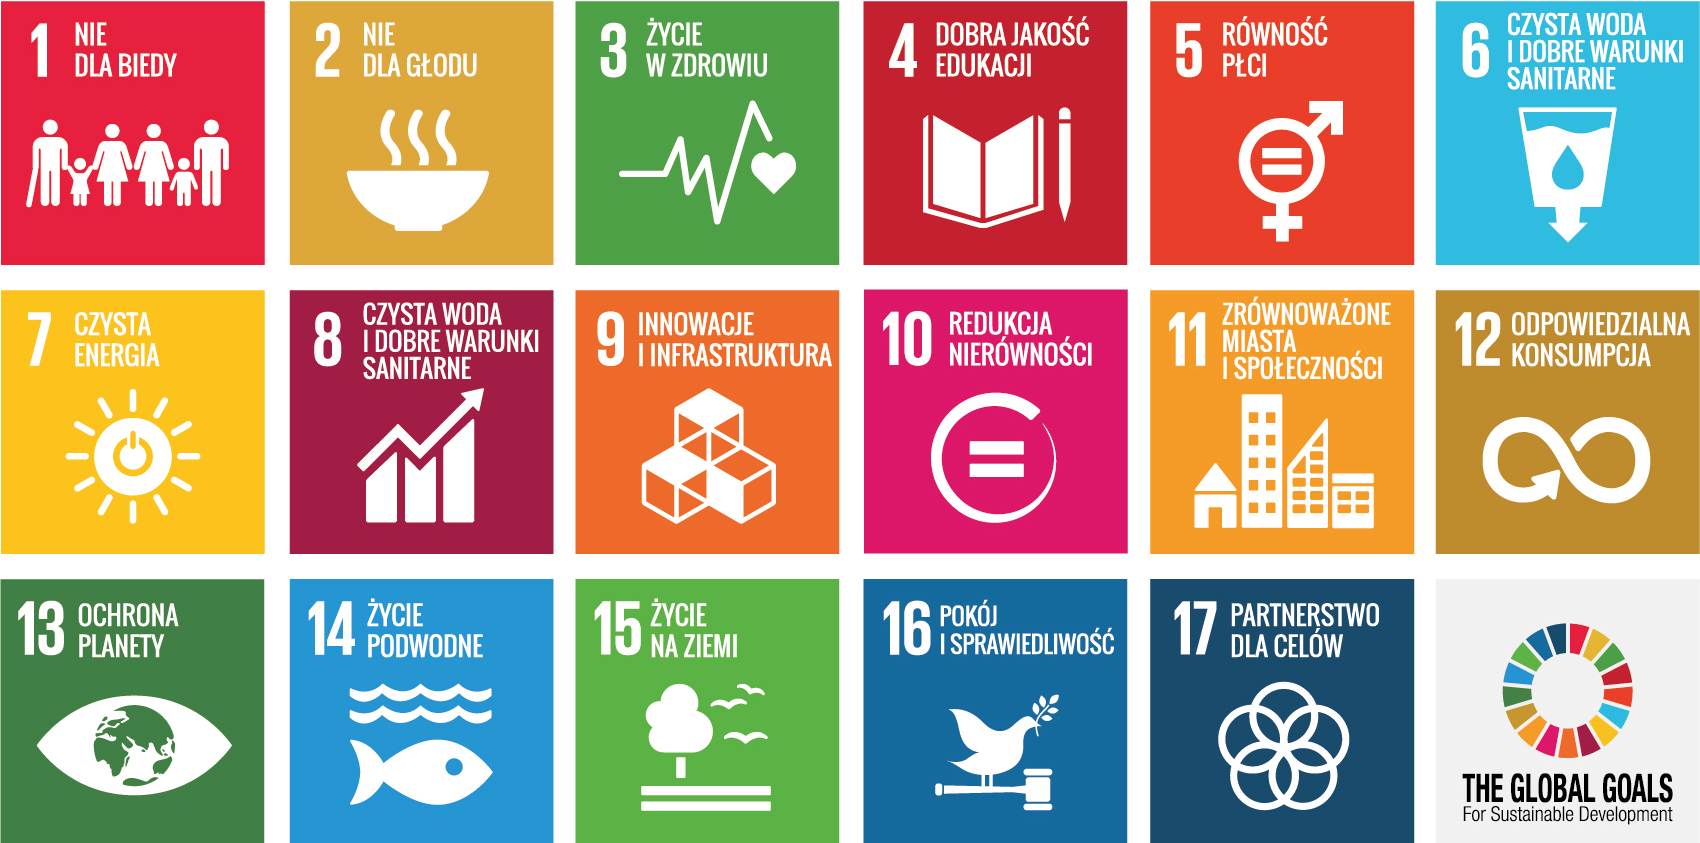 Zintegrowany Raport Roczny 2015 - Grupa Kapitałowa LOTOS Cele Zrównoważonego Rozwoju to 17 celów, 169 zadań i 304 wskaźników, dzięki którym w 2030 roku społeczeństwu ma się żyć lepiej, zdrowiej i